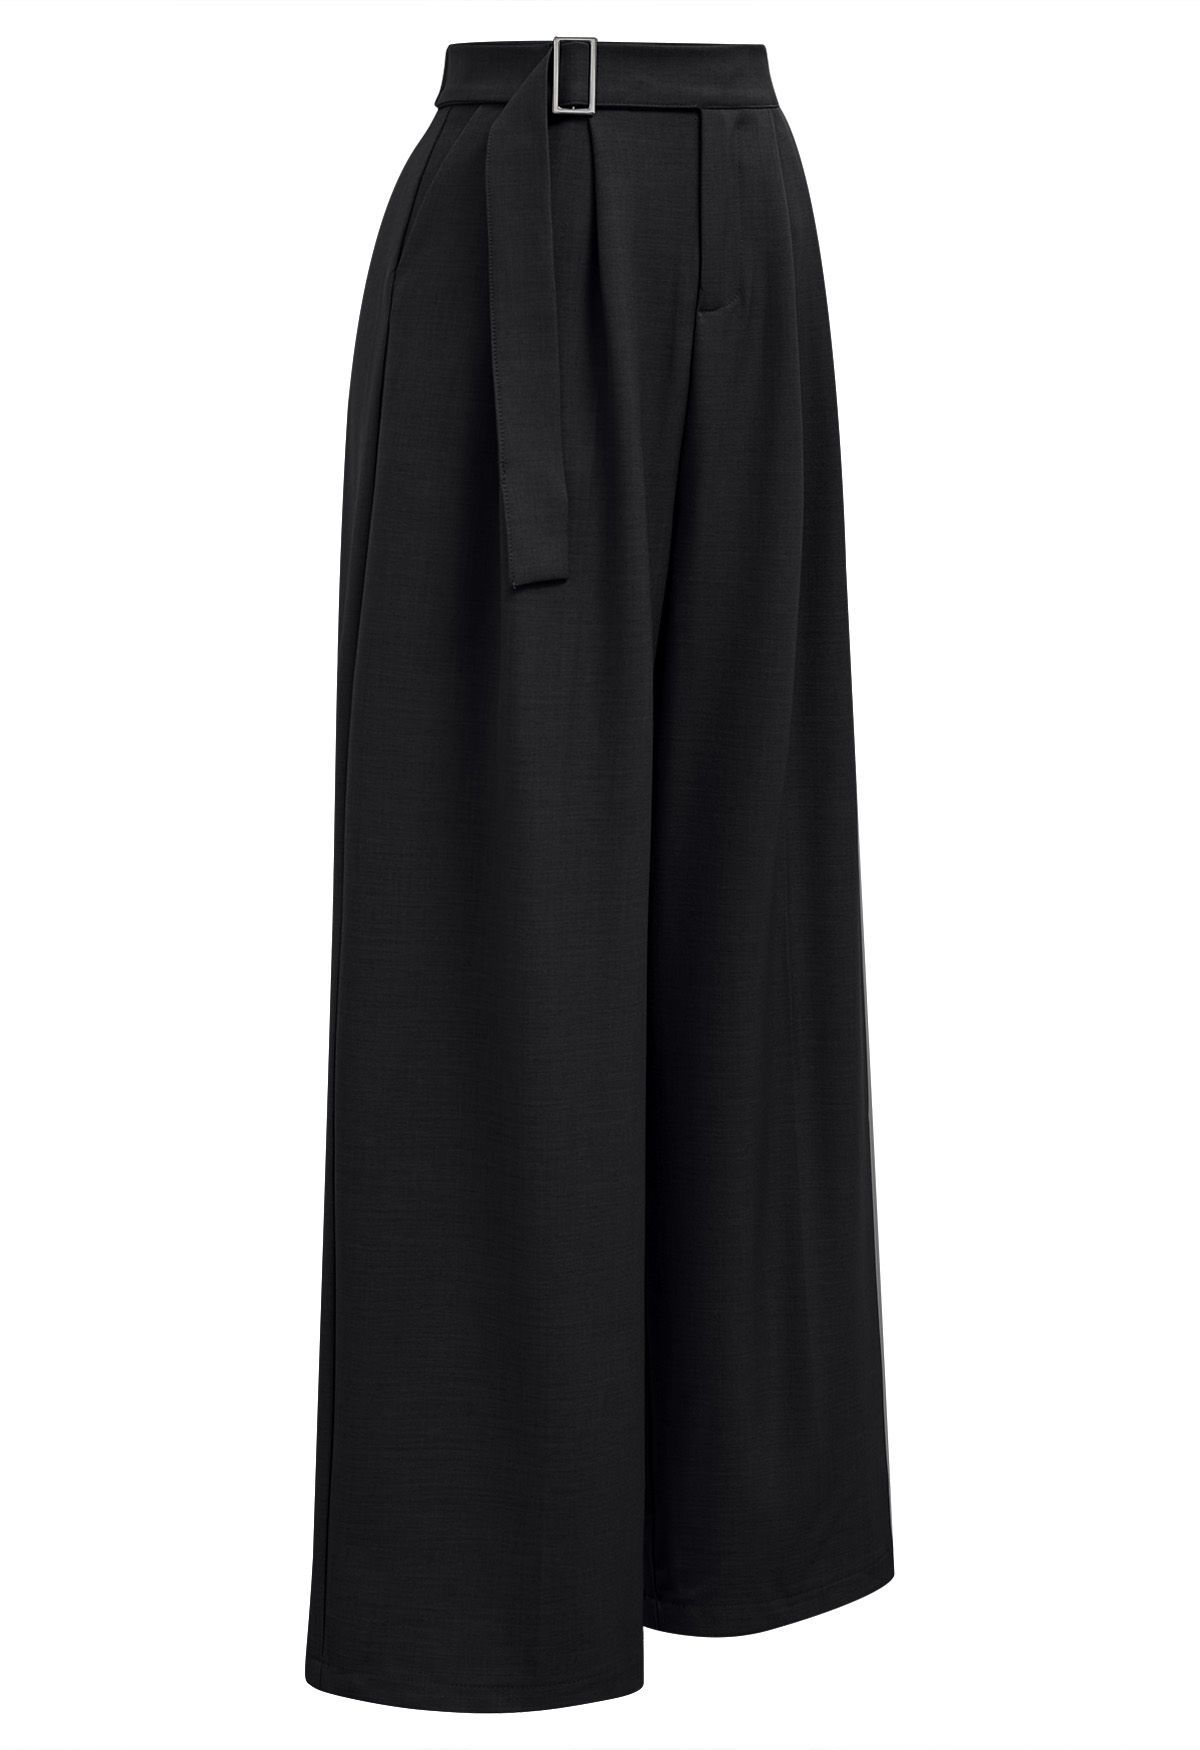 Pantalon large taille haute ceinturé uni en noir